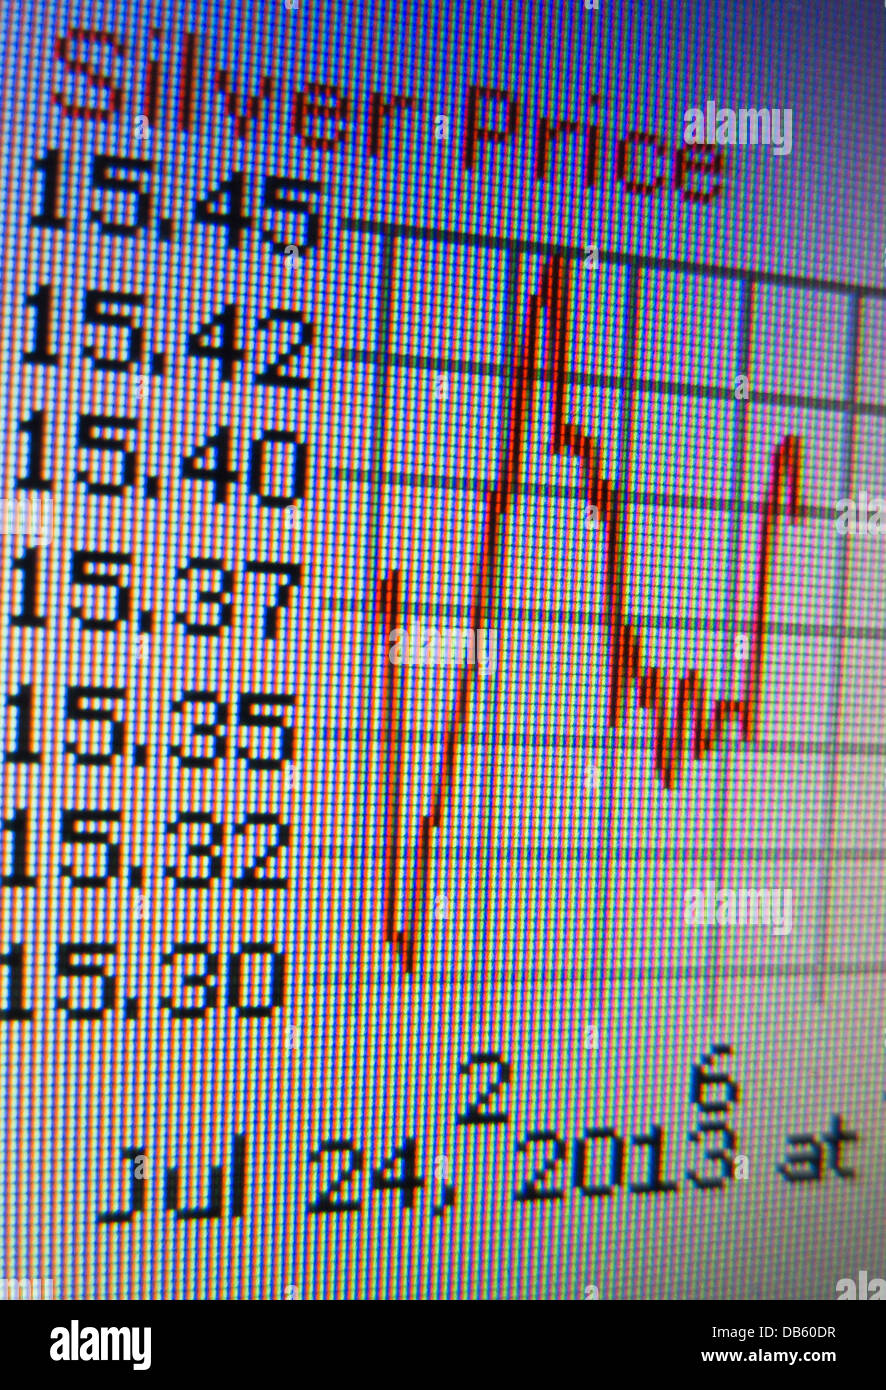 Grafico che mostra le fluttuazioni del prezzo del argento in Euro prelevati da uno schermo di un computer. Foto Stock